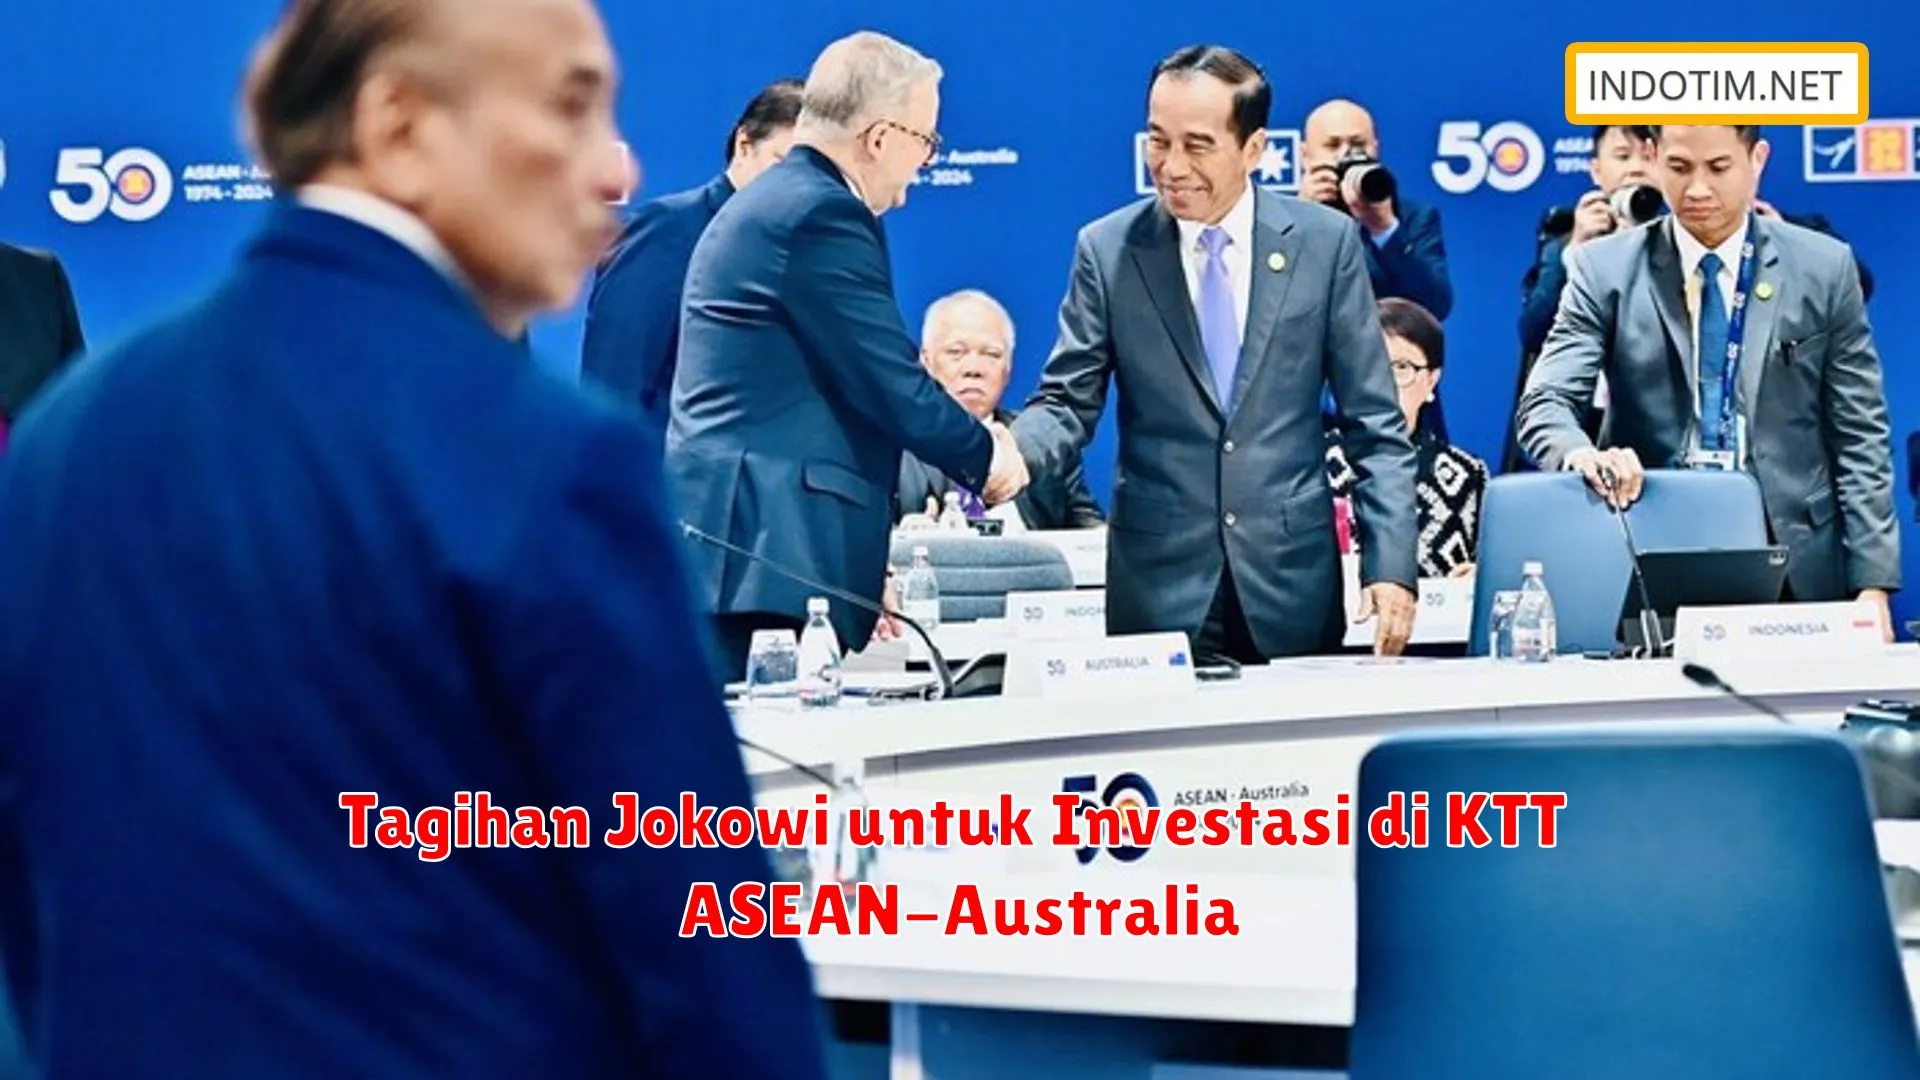 Tagihan Jokowi untuk Investasi di KTT ASEAN-Australia